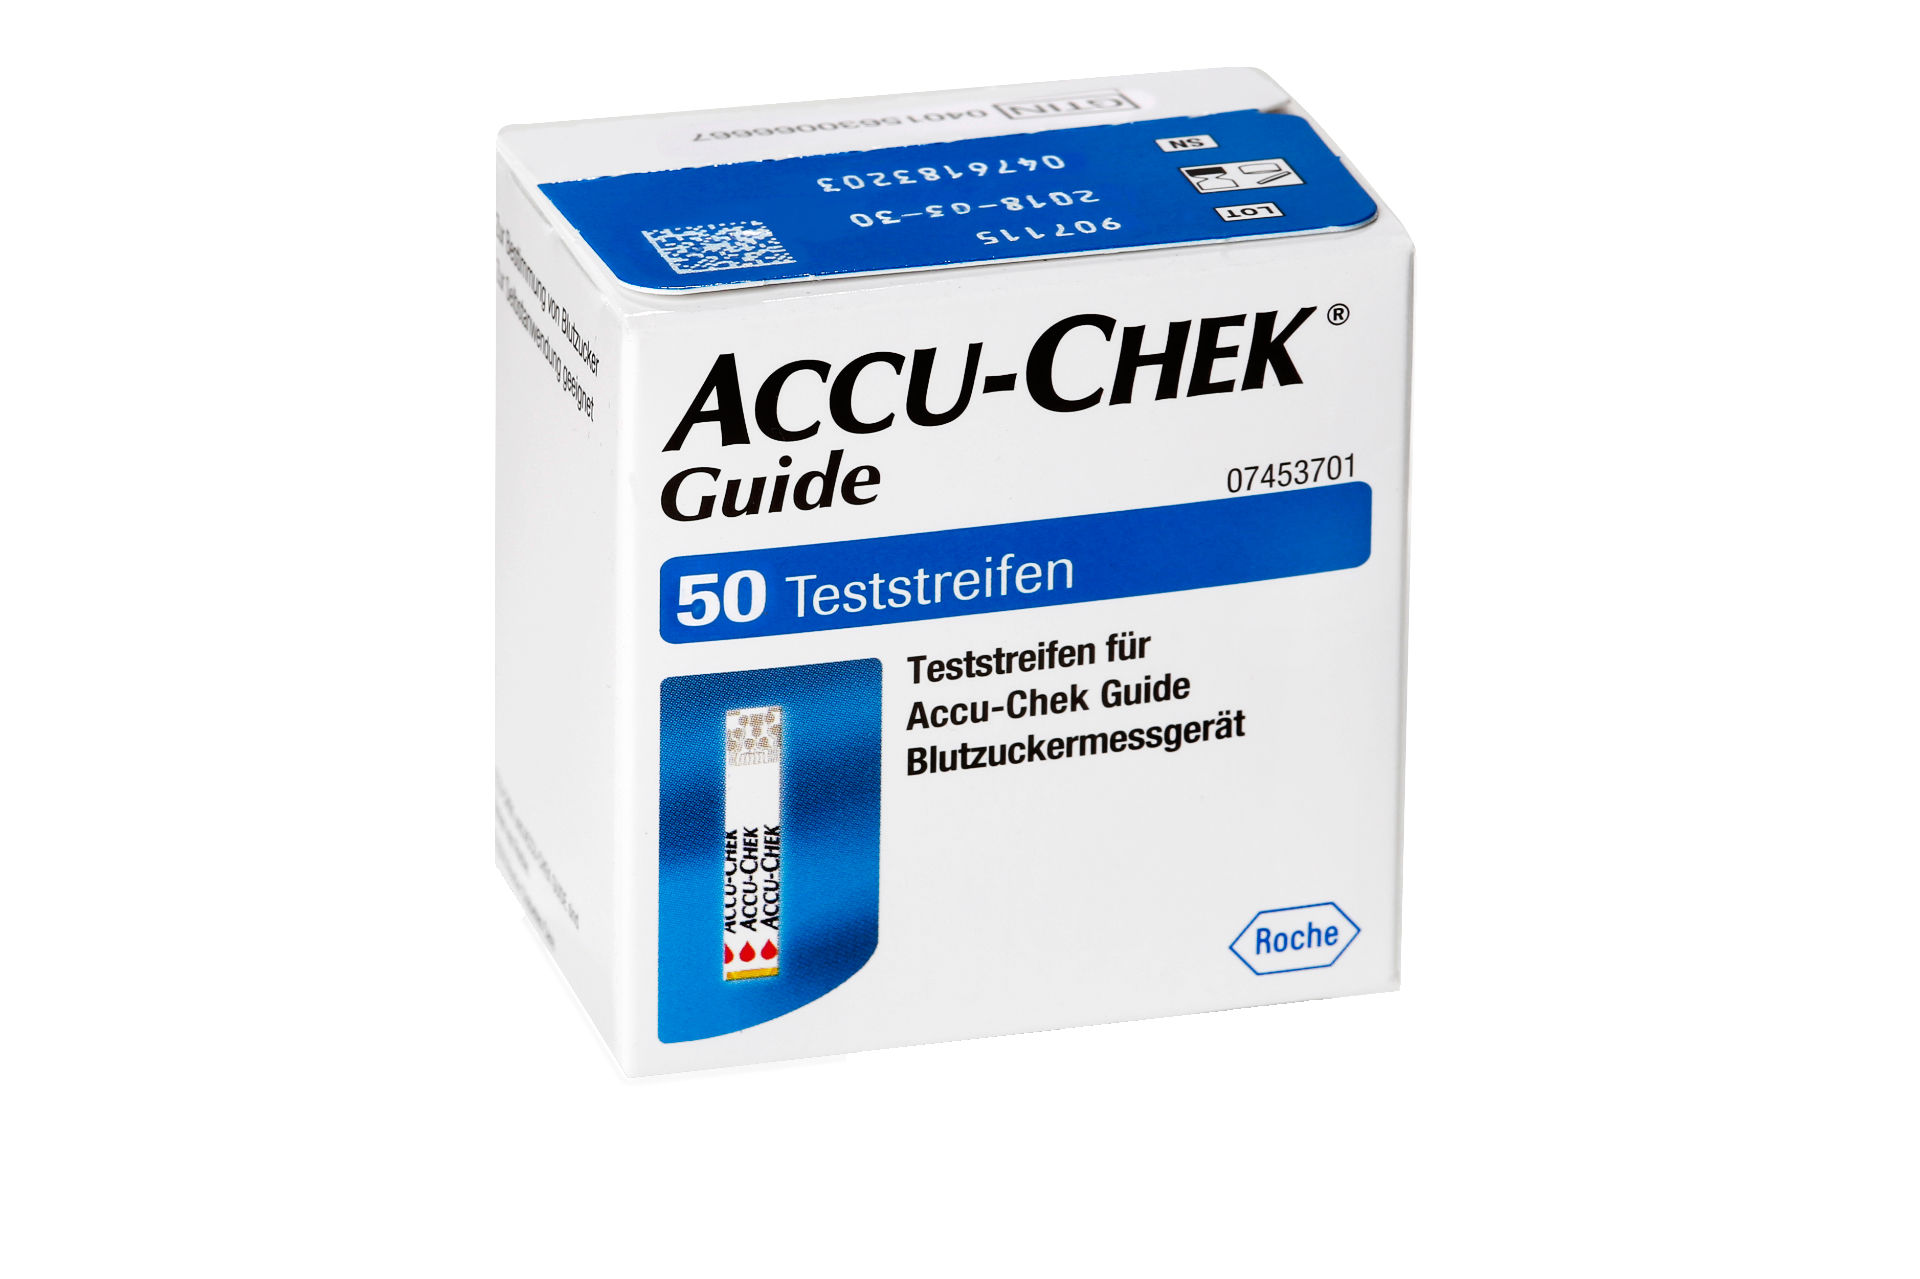  ACCU-CHECK®  Guide Teststreifen  - 50 Stück